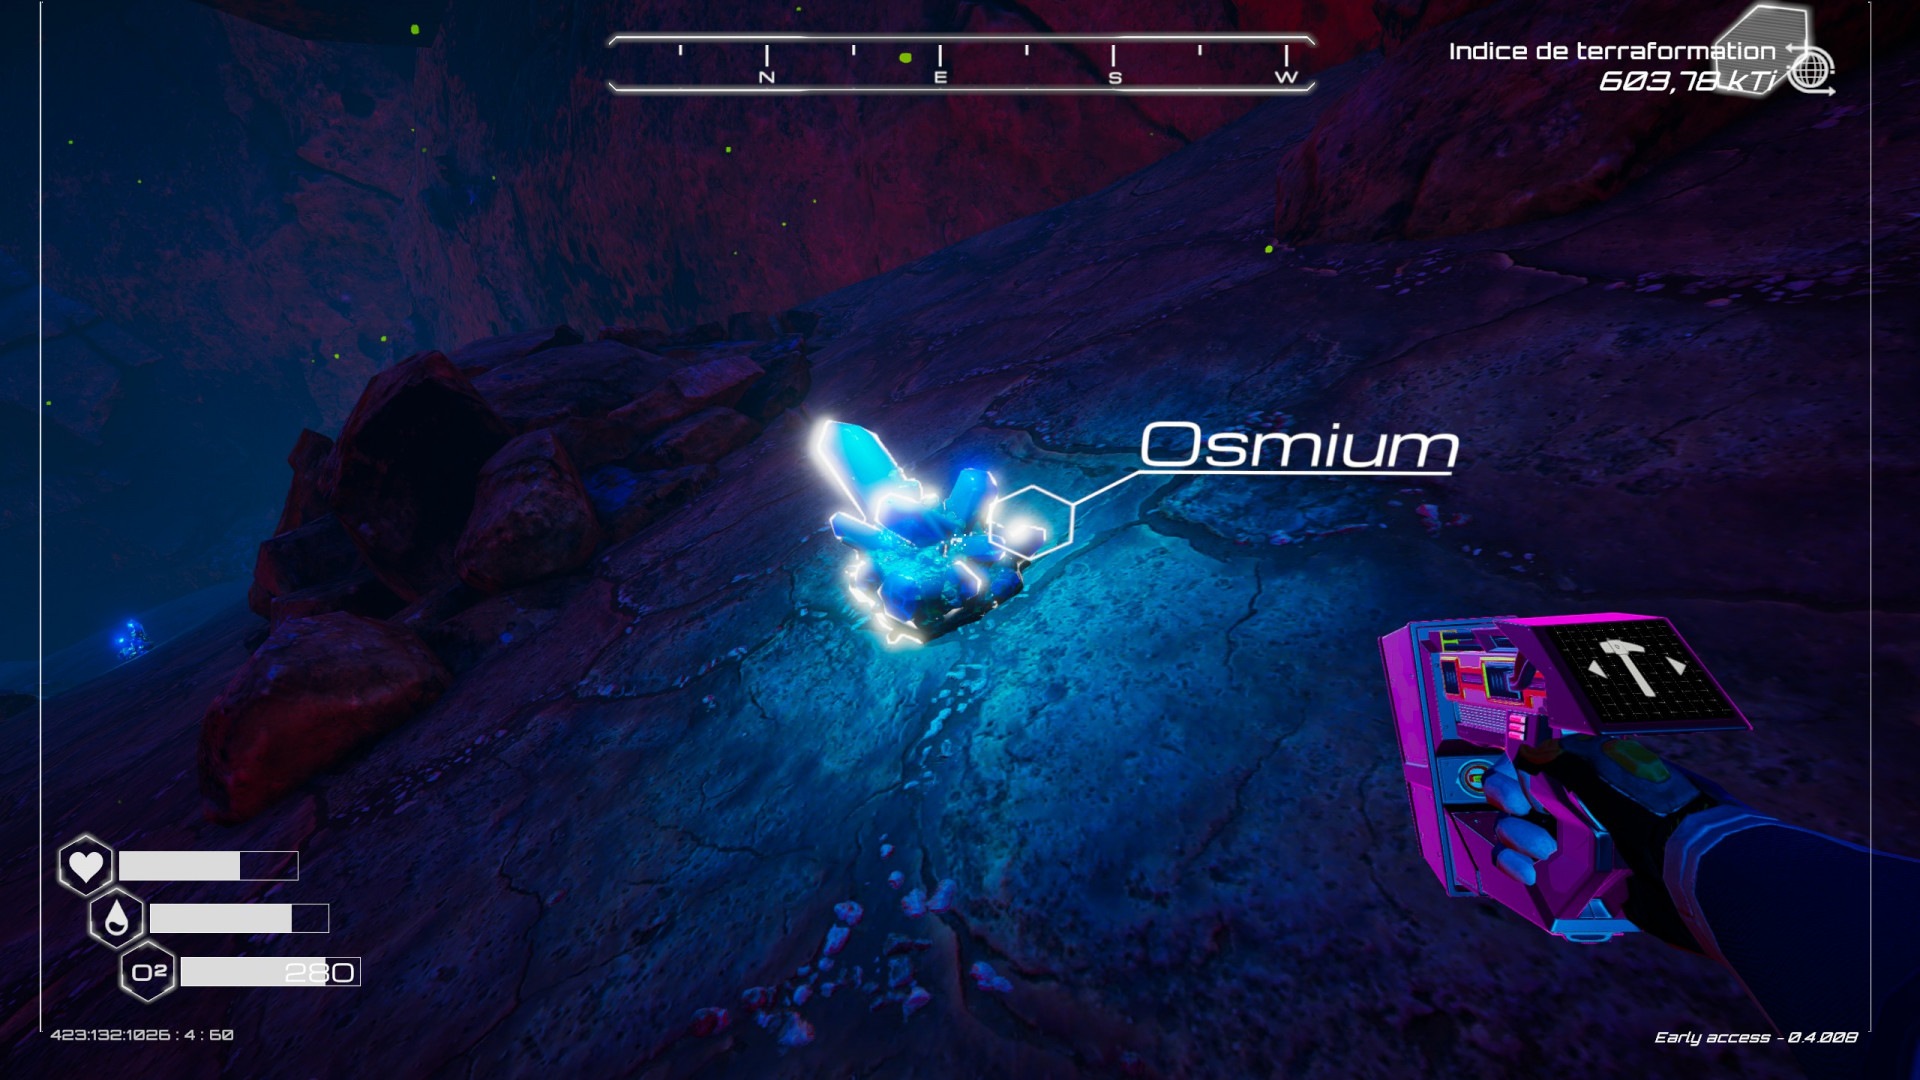 Une grotte bleue qui contient de l'osmium...c'est bon, vous avez compris ?